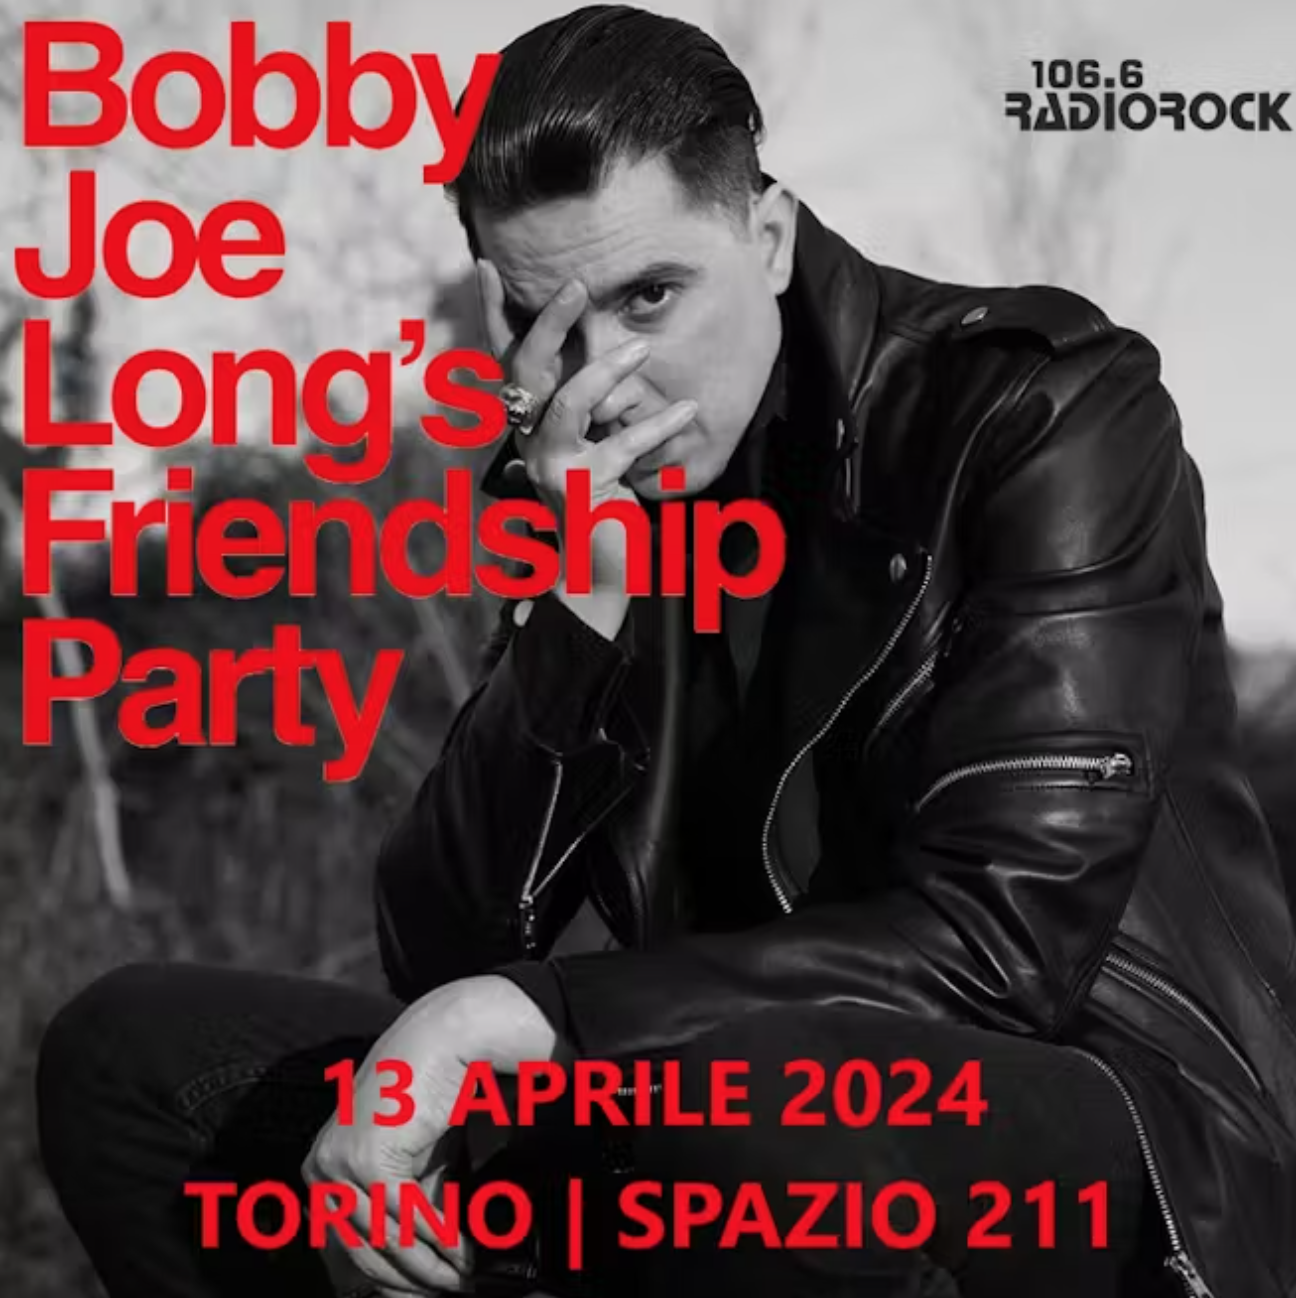 BOBBY JOE LONG'S FRIENDSHIP PARTY 